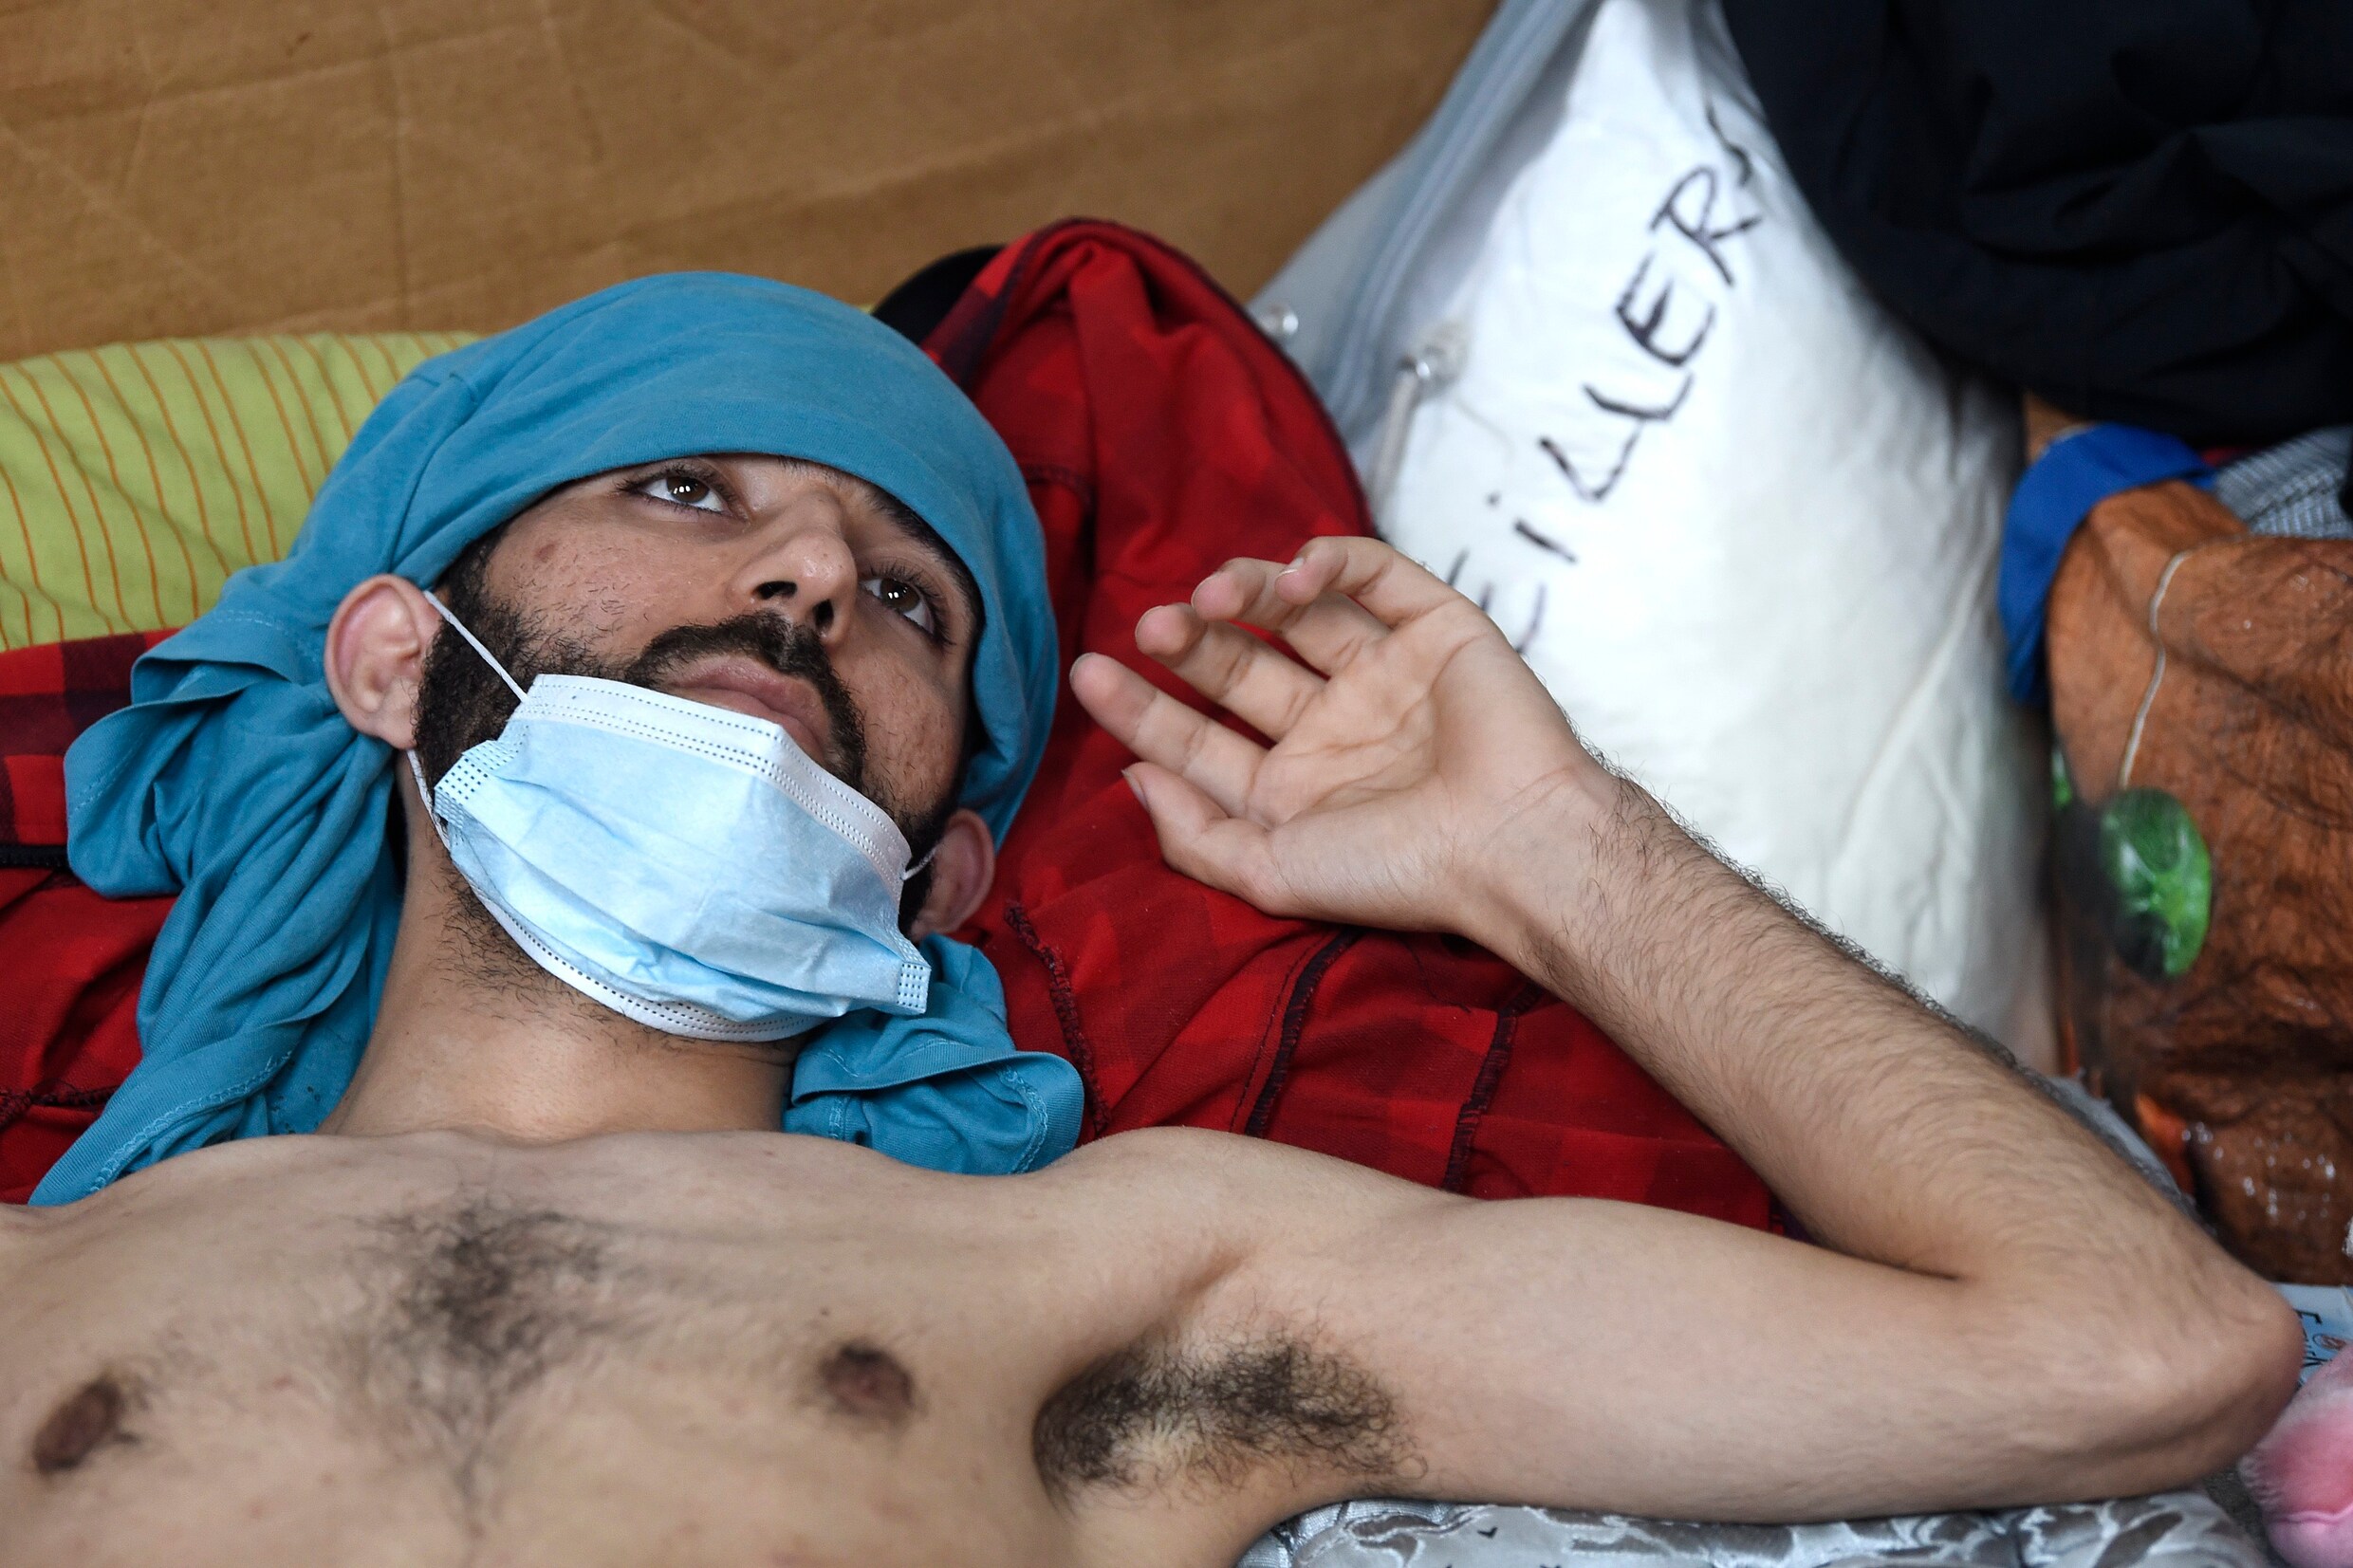 Ziekenwagens gestuurd ‘van hogerhand’ om hongerstakers op te halen